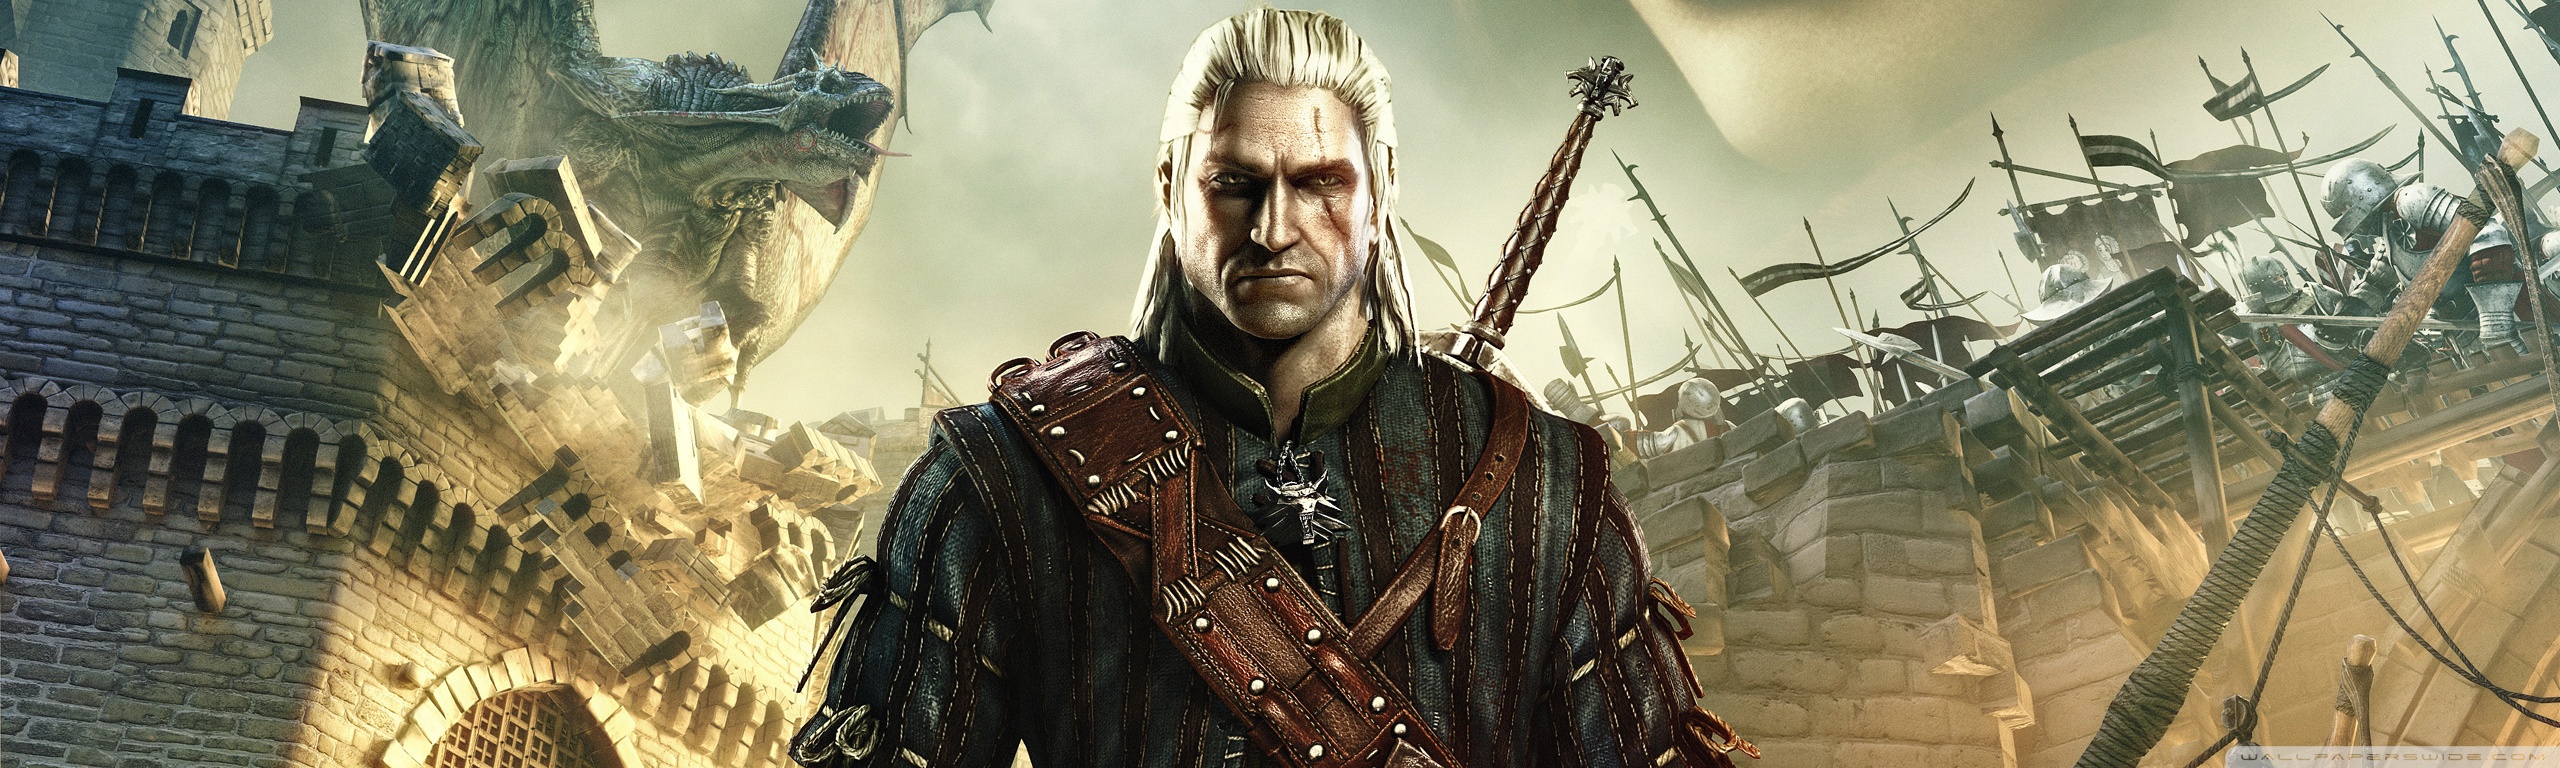 The Witcher 2: Assassins of Kings Ultra HD Desktop Background Wallpaper ...